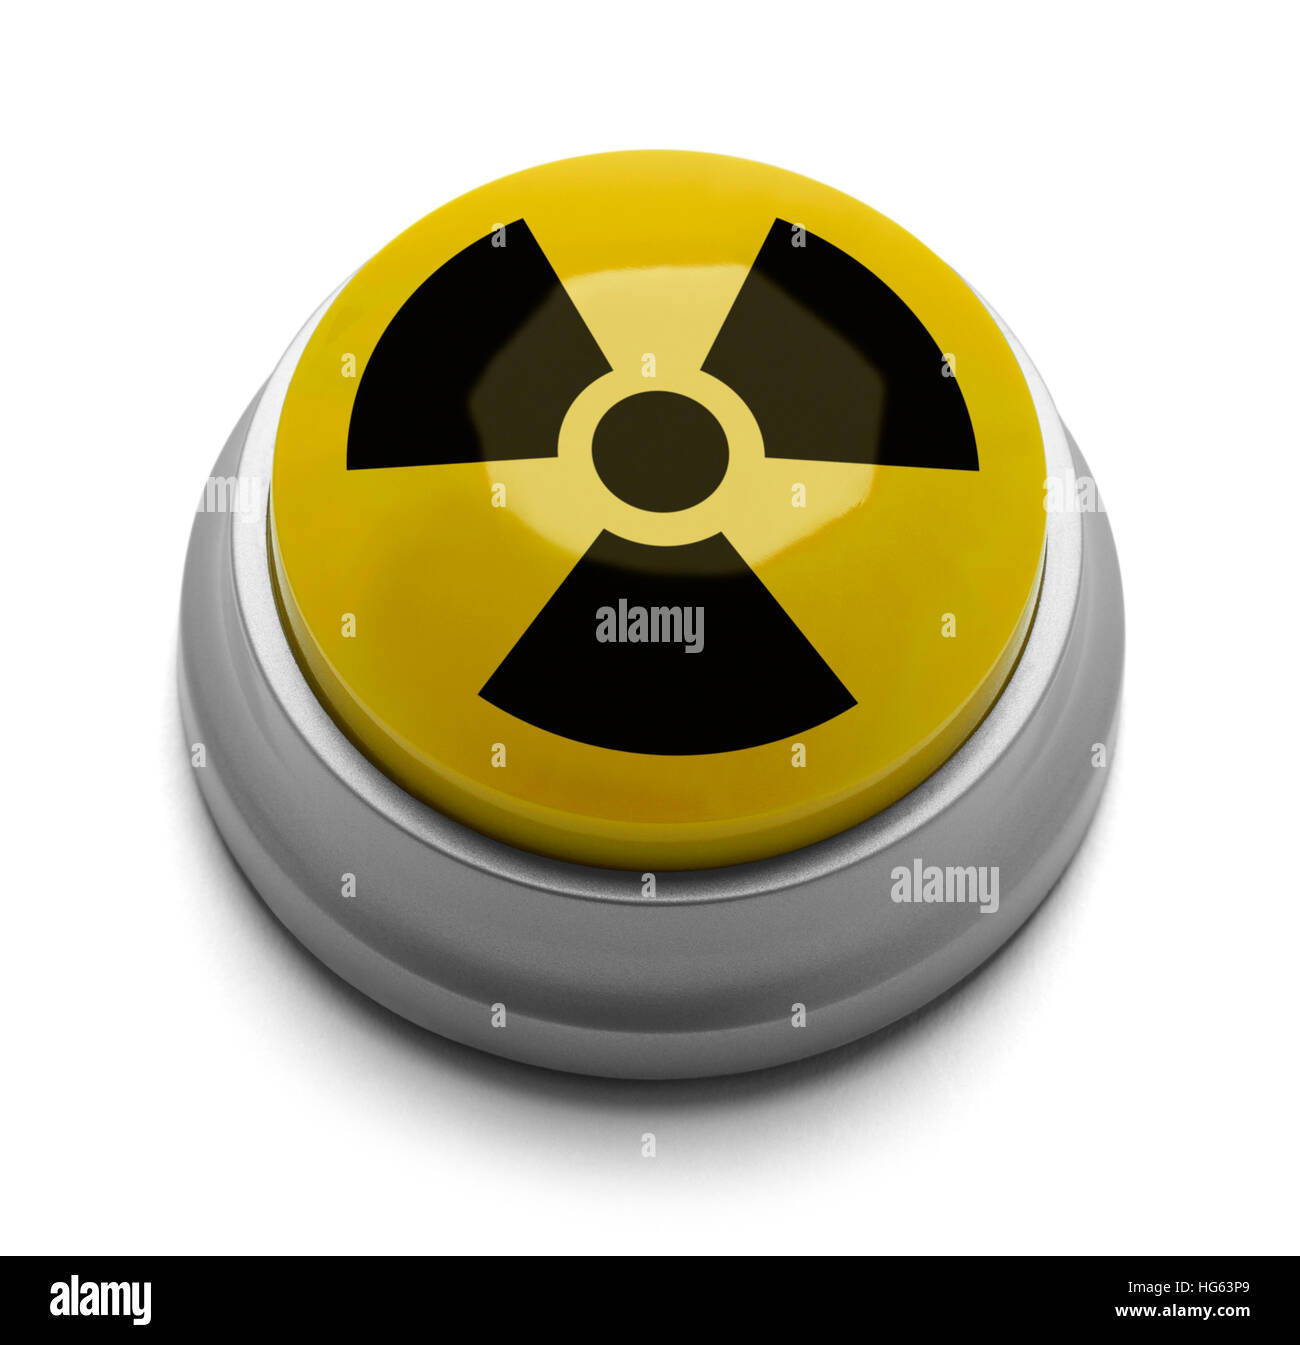 Gelb und schwarz nuklearen Knopf, Isolated on White Background. Stockfoto